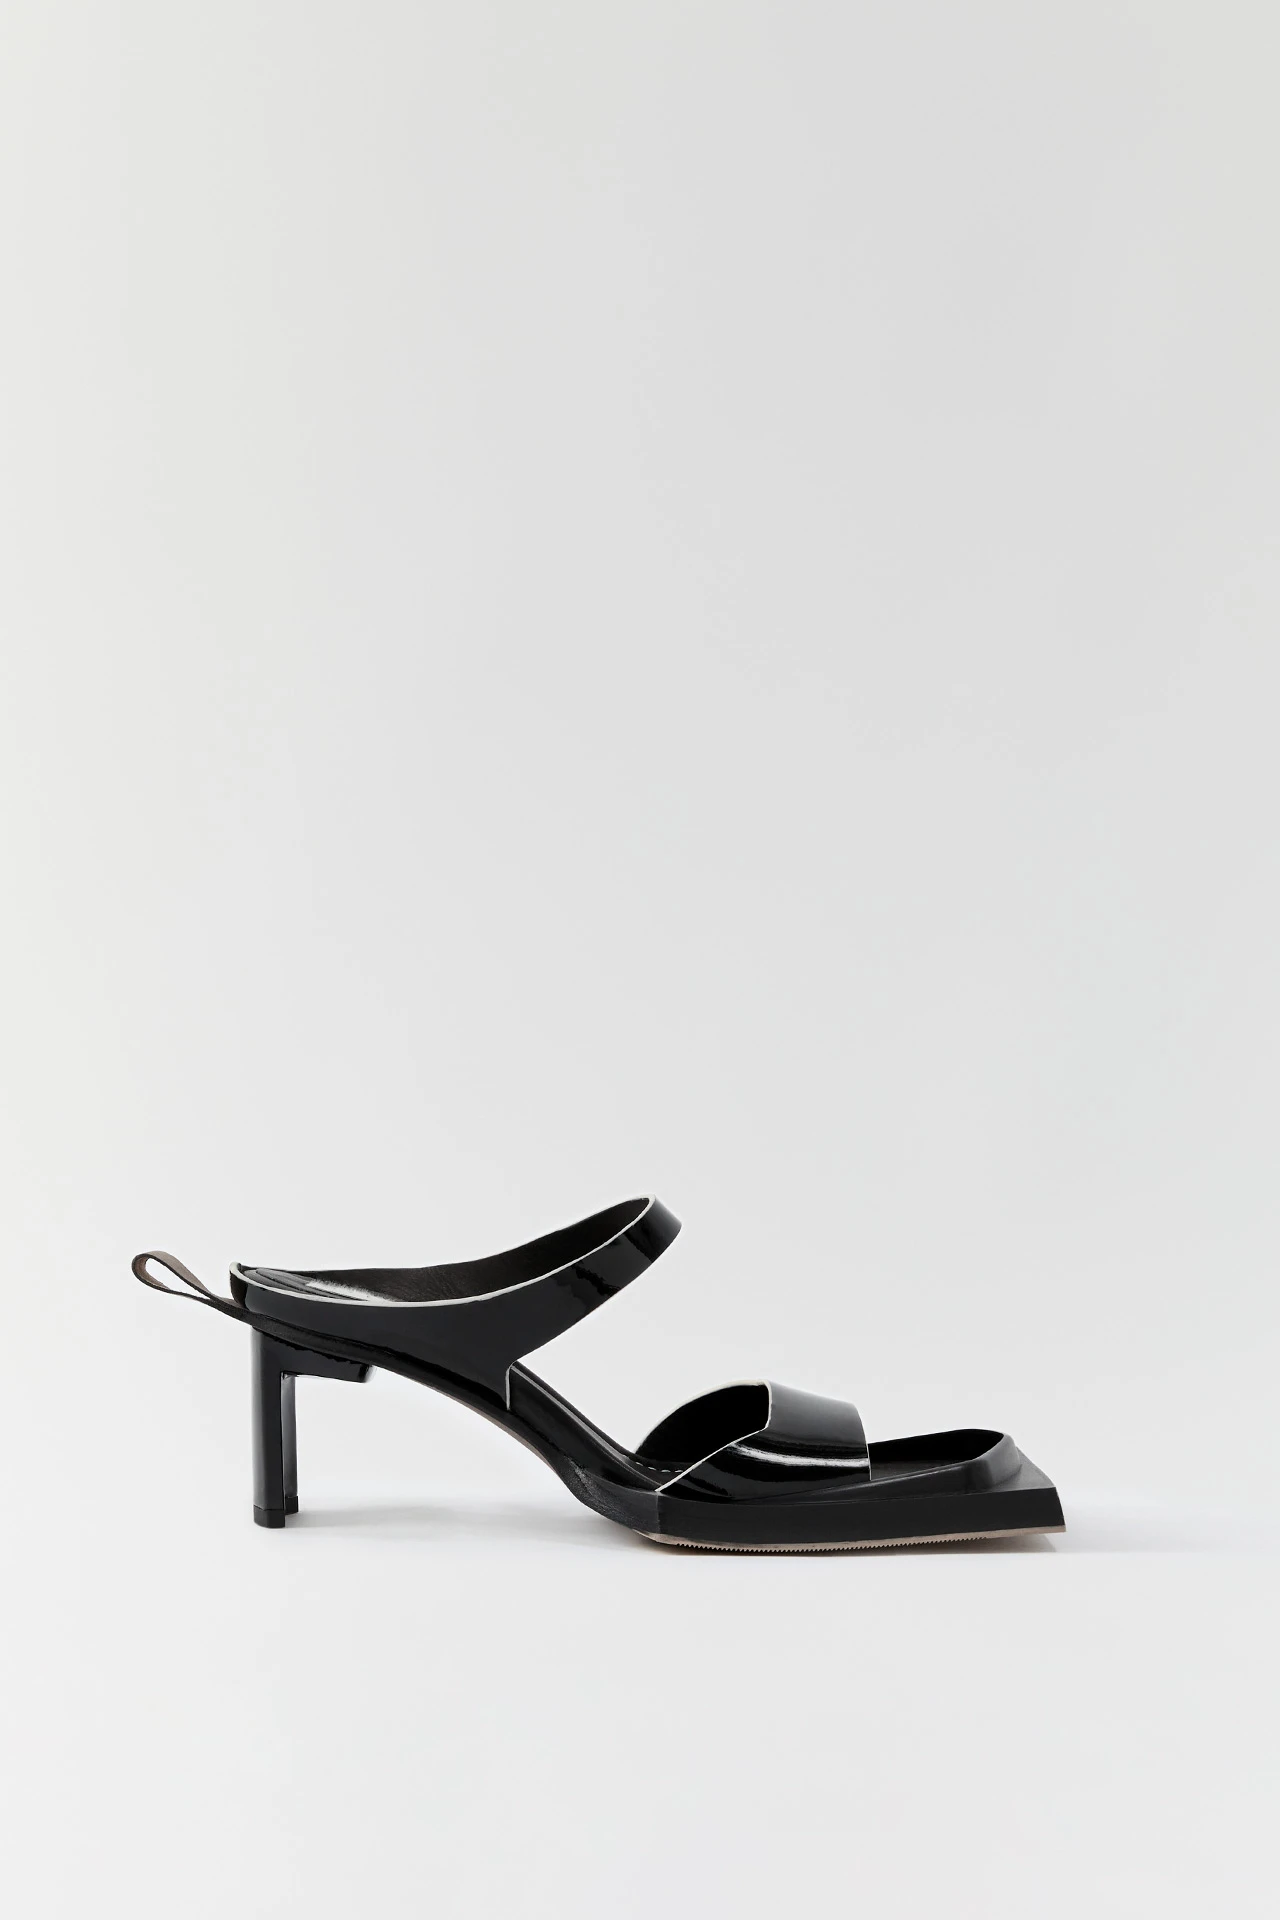 Miista-ren-black-sandals-01